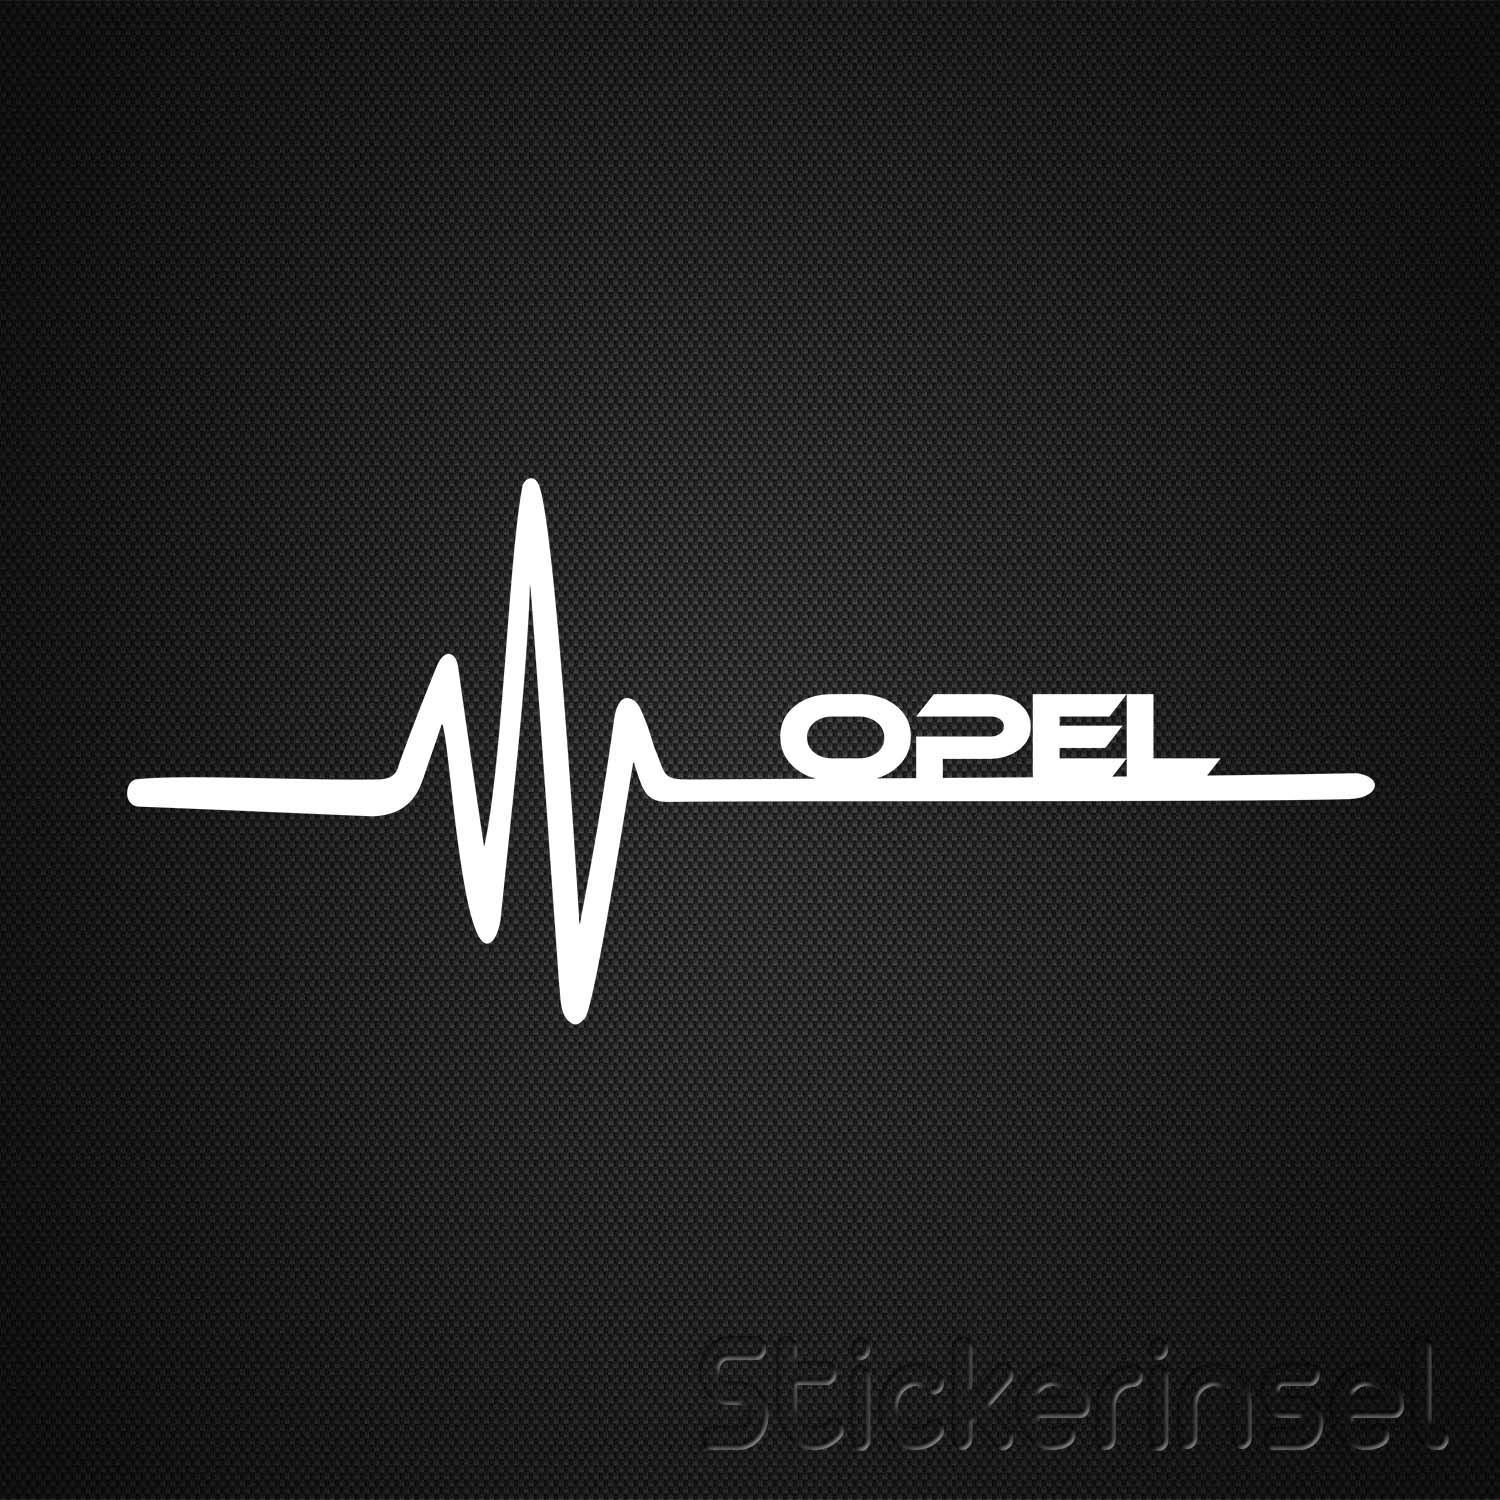 Heartbeat Opel